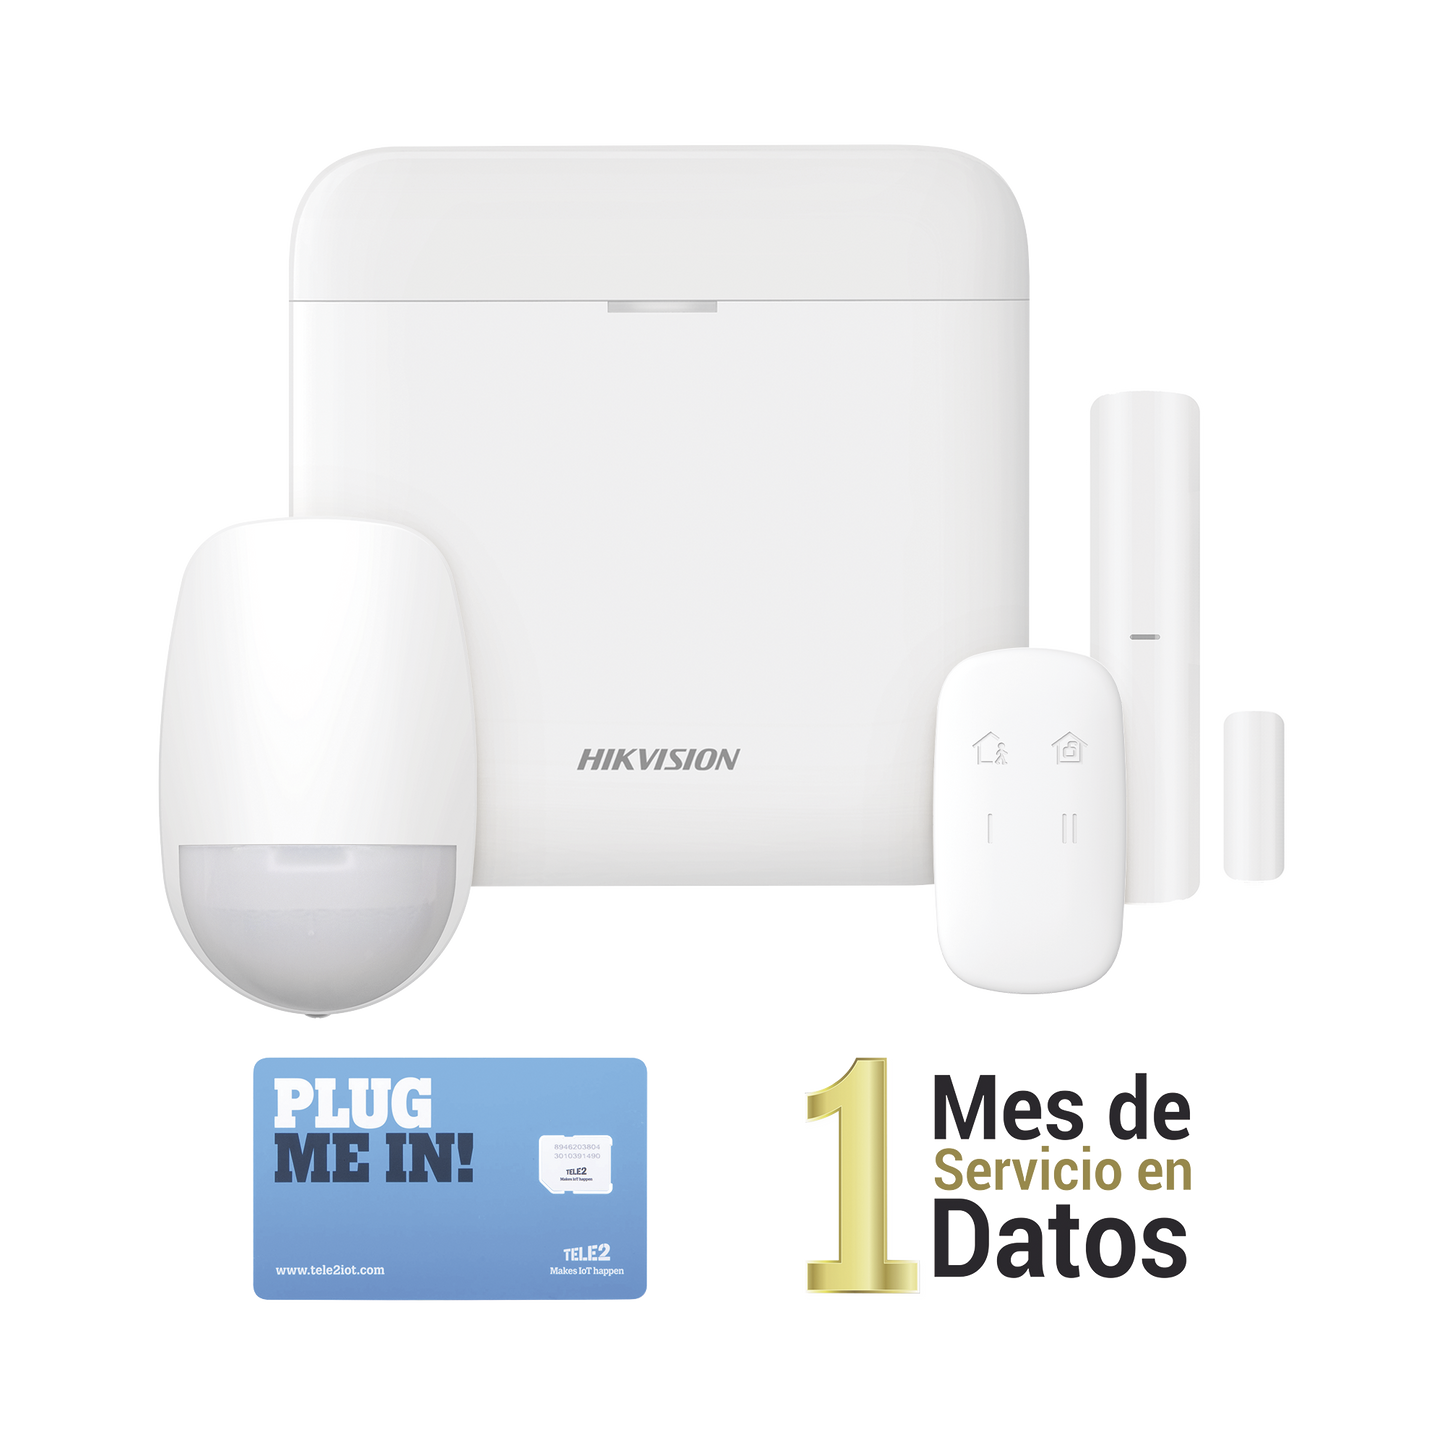 (AX PRO) KIT de Alarma AX PRO con GSM (3G/4G) / Incluye: 1 Hub con bateria de respaldo / 1 Sensor PIR / 1 Contacto Magnético / 1 Control Remoto /1 MICROSIM30M2M incluye 1 mes de servicio/ Wi-Fi / Compatible con Hik-Connect P2P